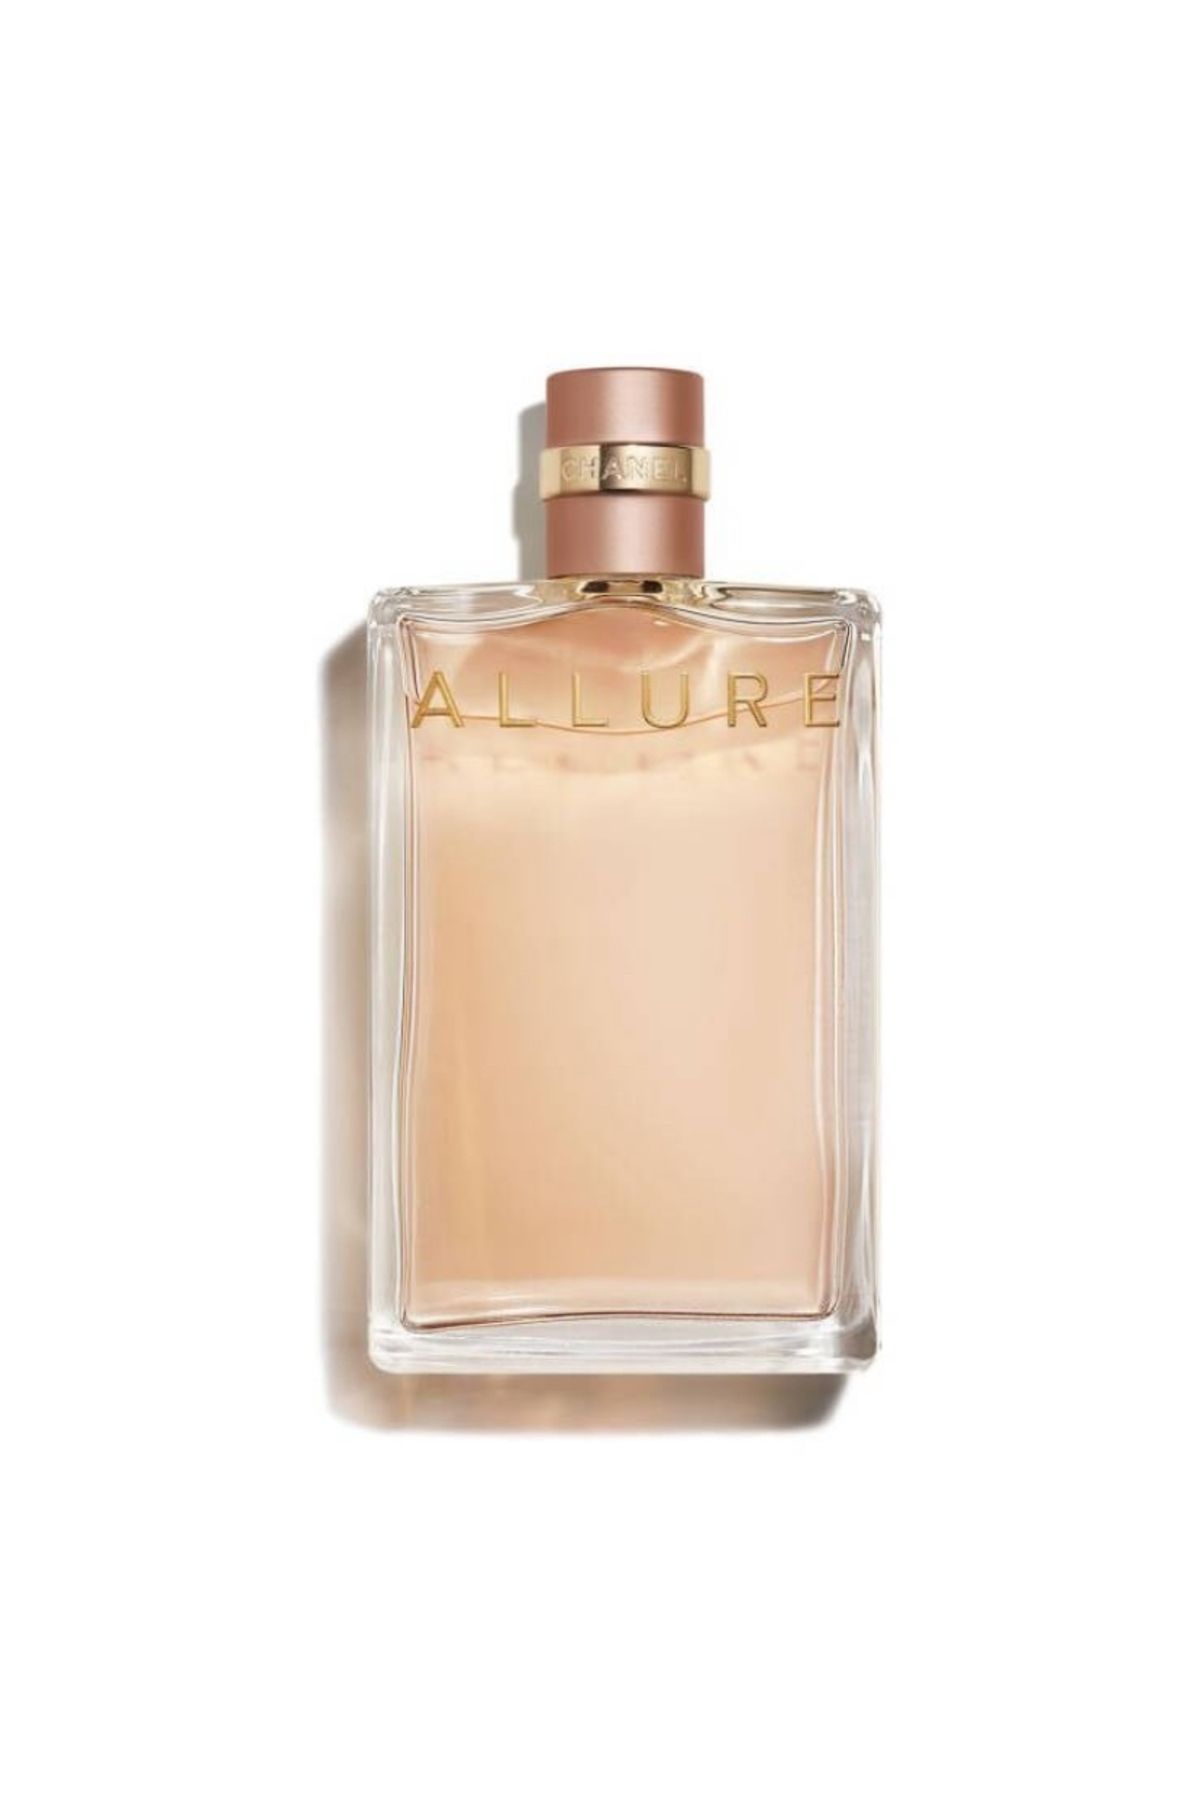 Chanel Allure Eau De Parfum Kadın Parfümü Edp 100ml Pinkestcosmetics